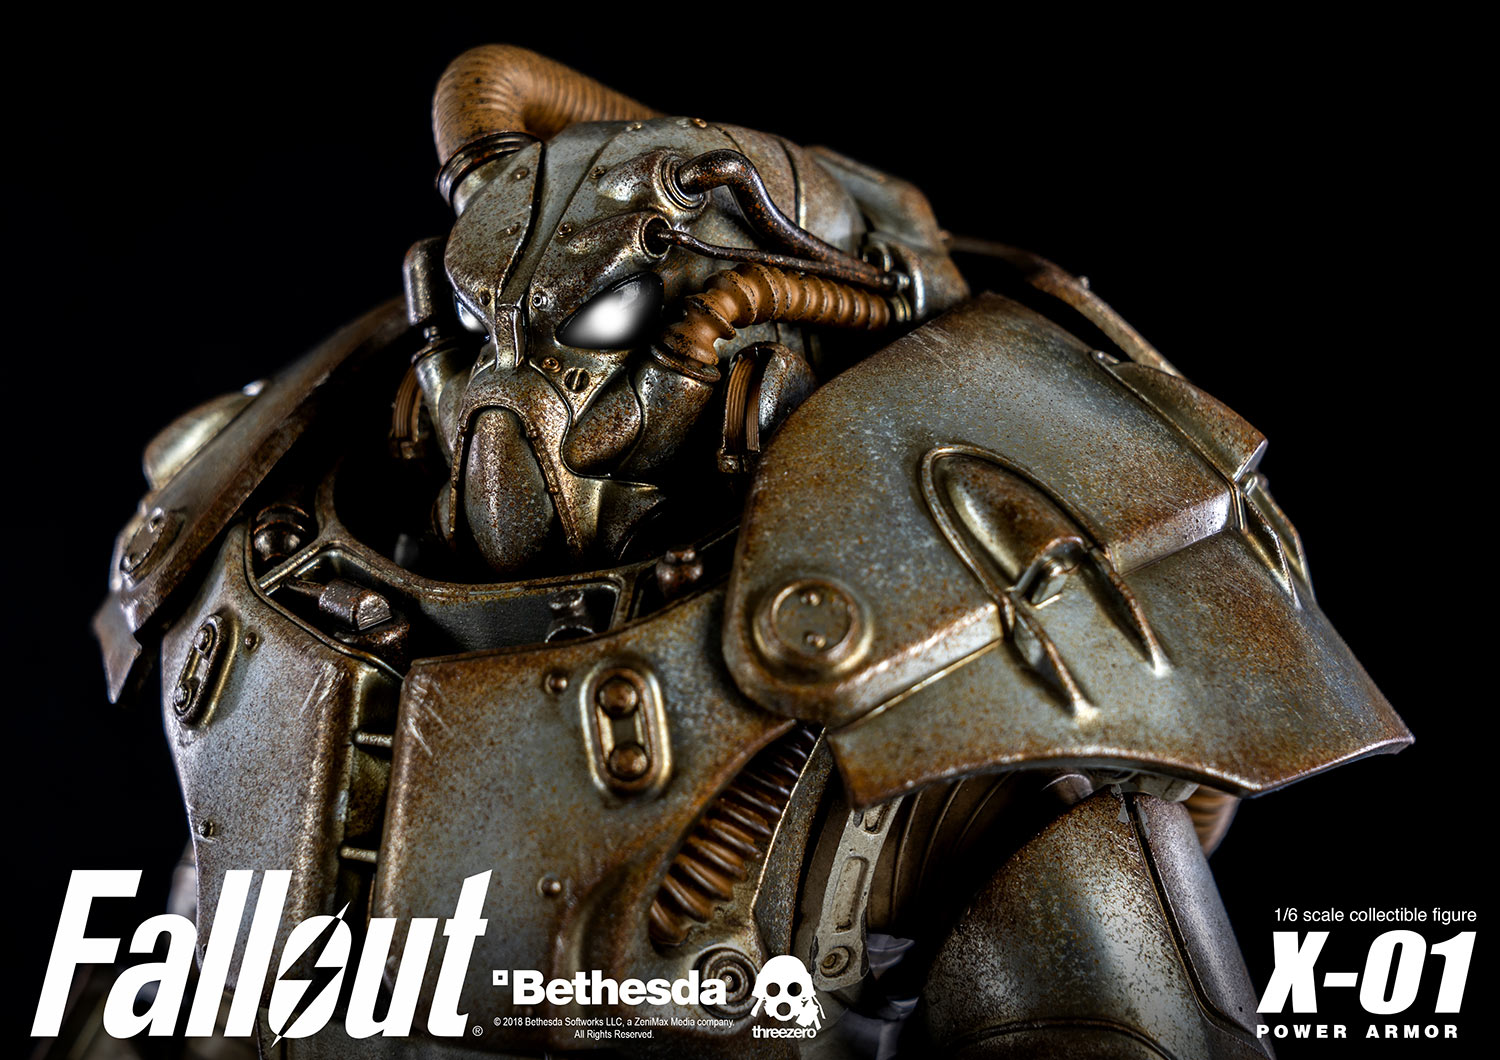 Fallout X 01 Power Armor Threezero Store